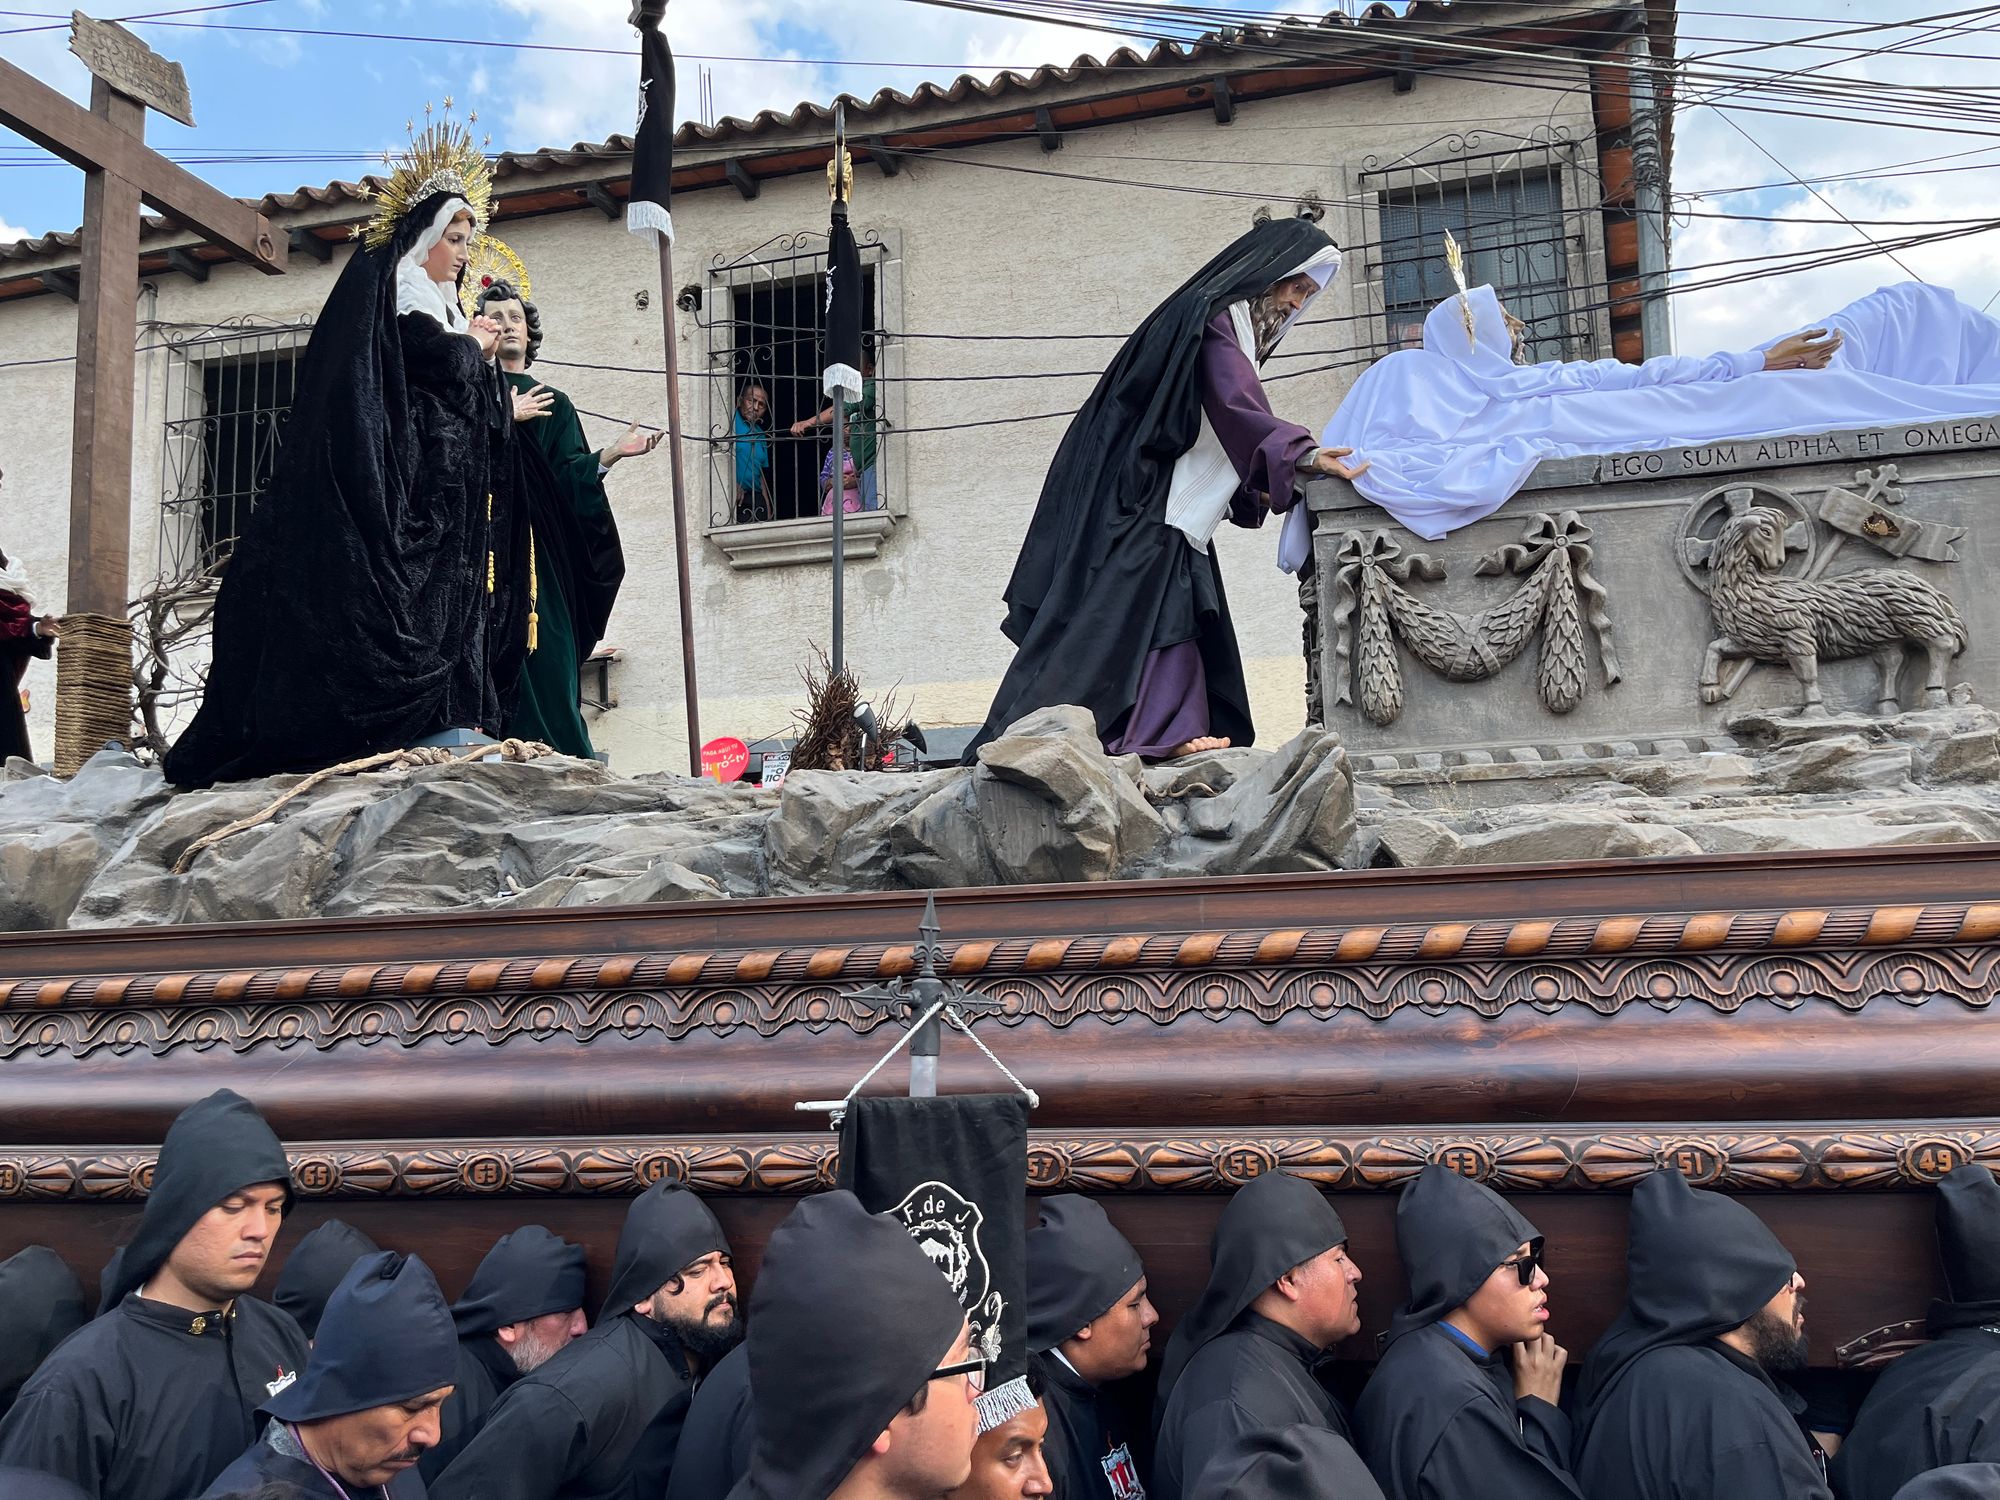 Semana Santa en Guatemala - Jak se slaví Velikonoce v Guatemale